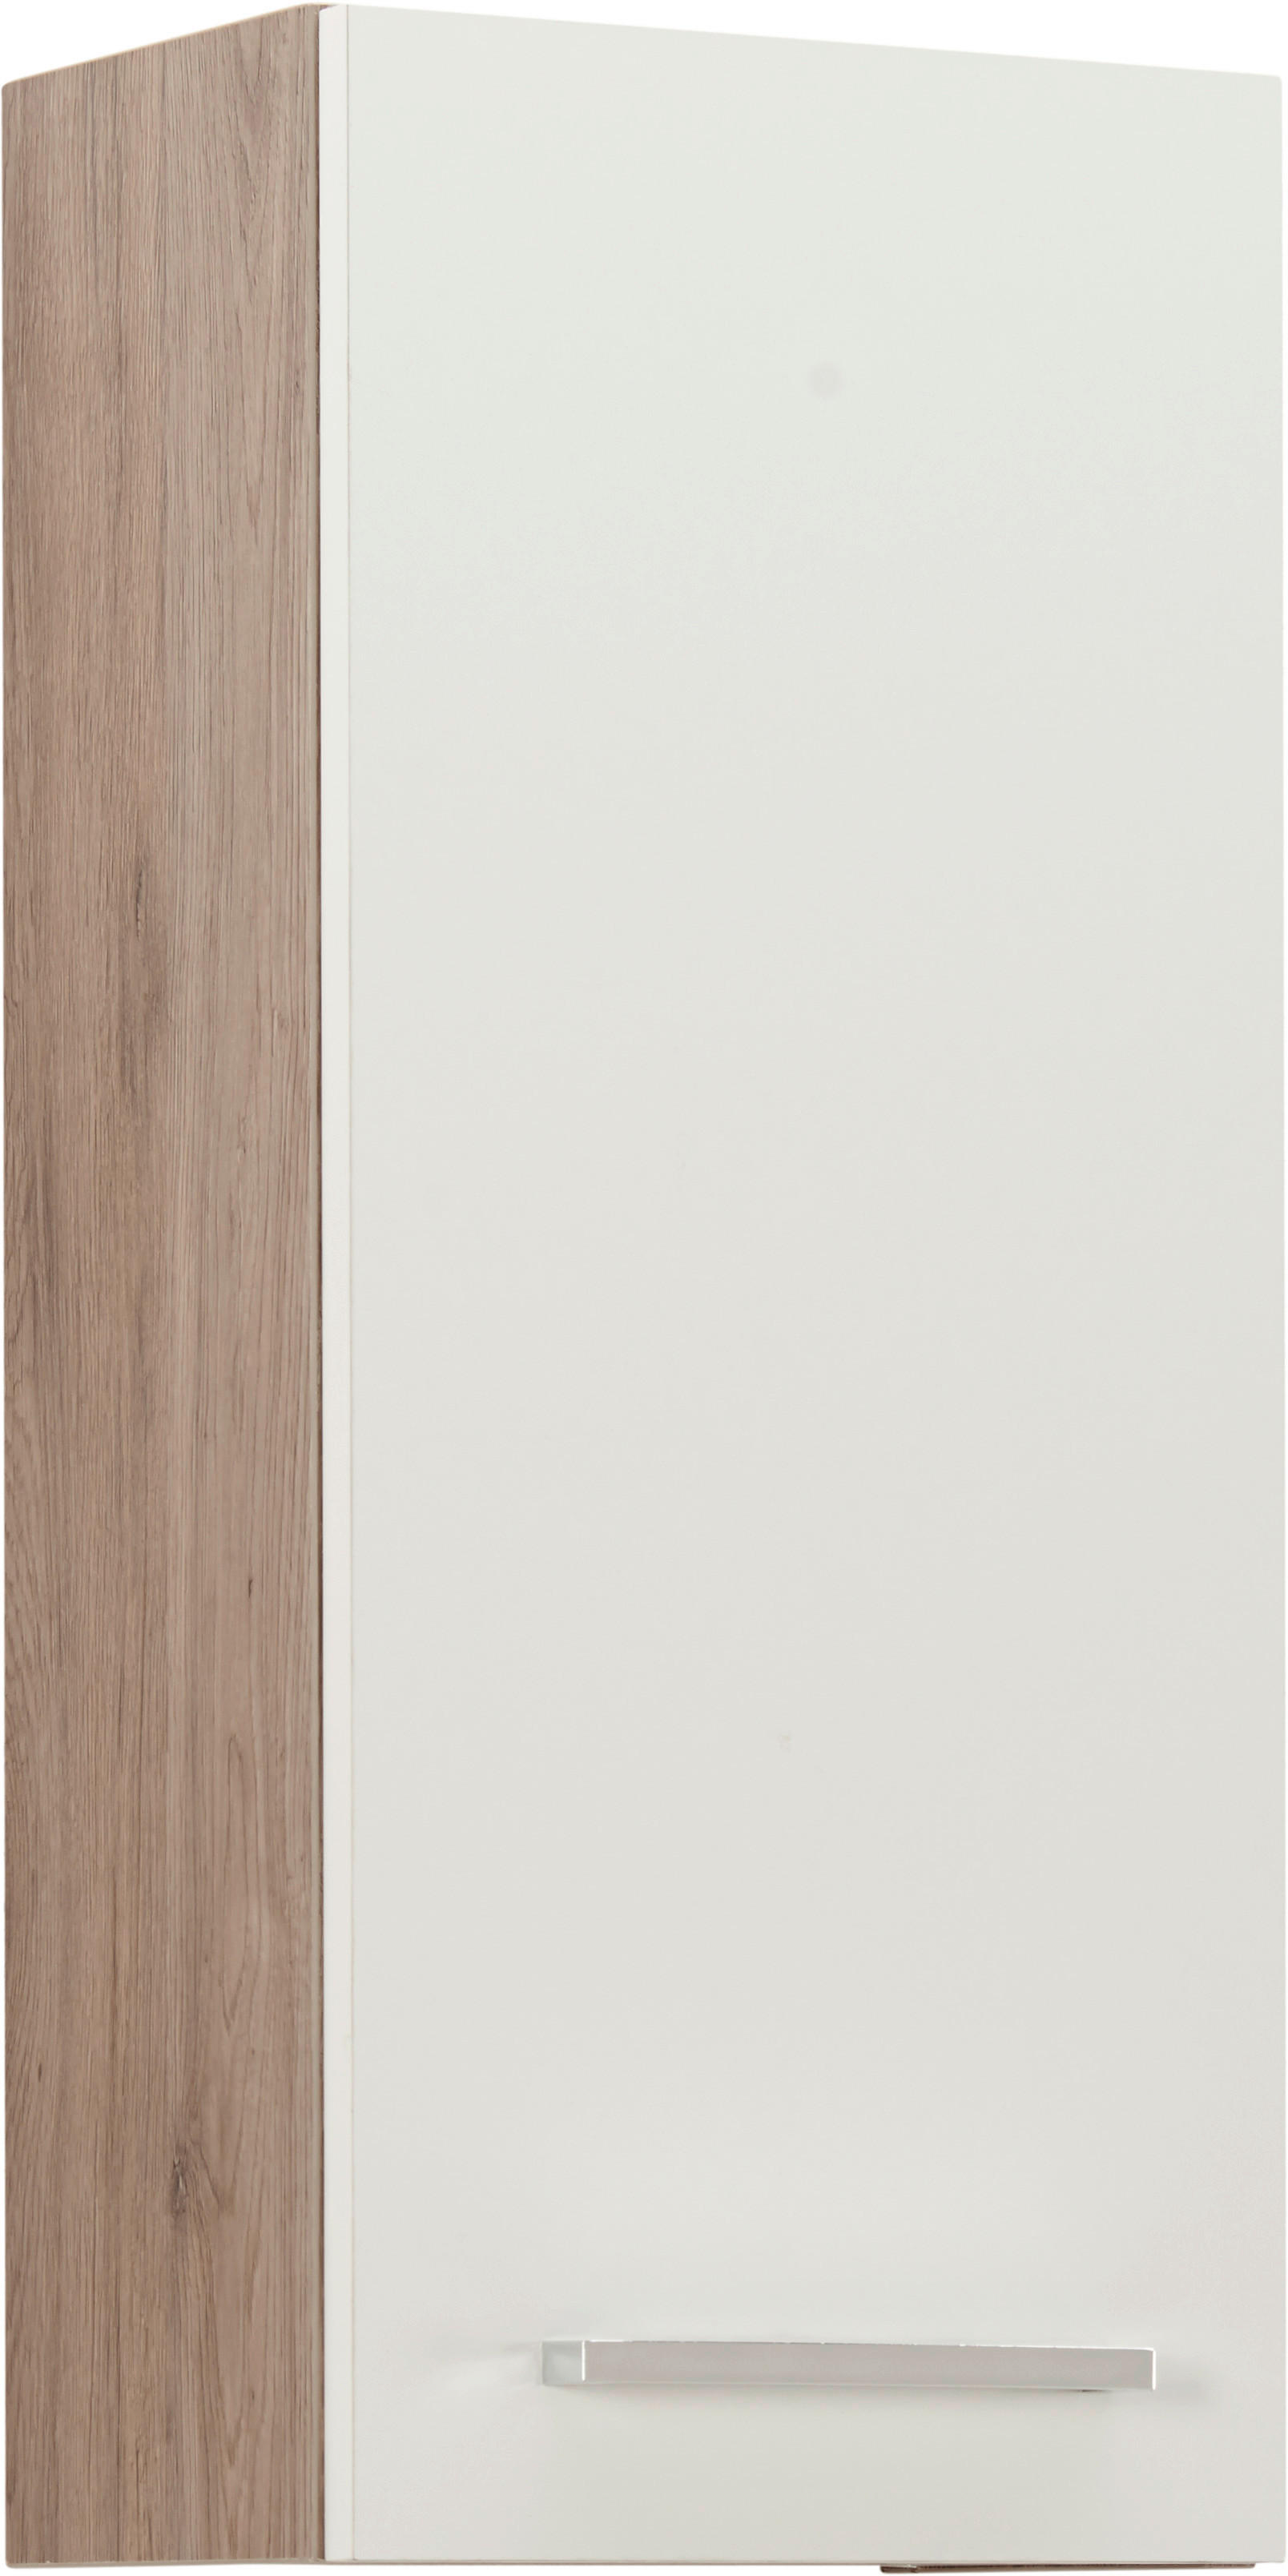 DULAP SUSPENDAT 30/70/20 cm  - alb/culoare crom, Design, metal/material pe bază de lemn (30/70/20cm) - Xora